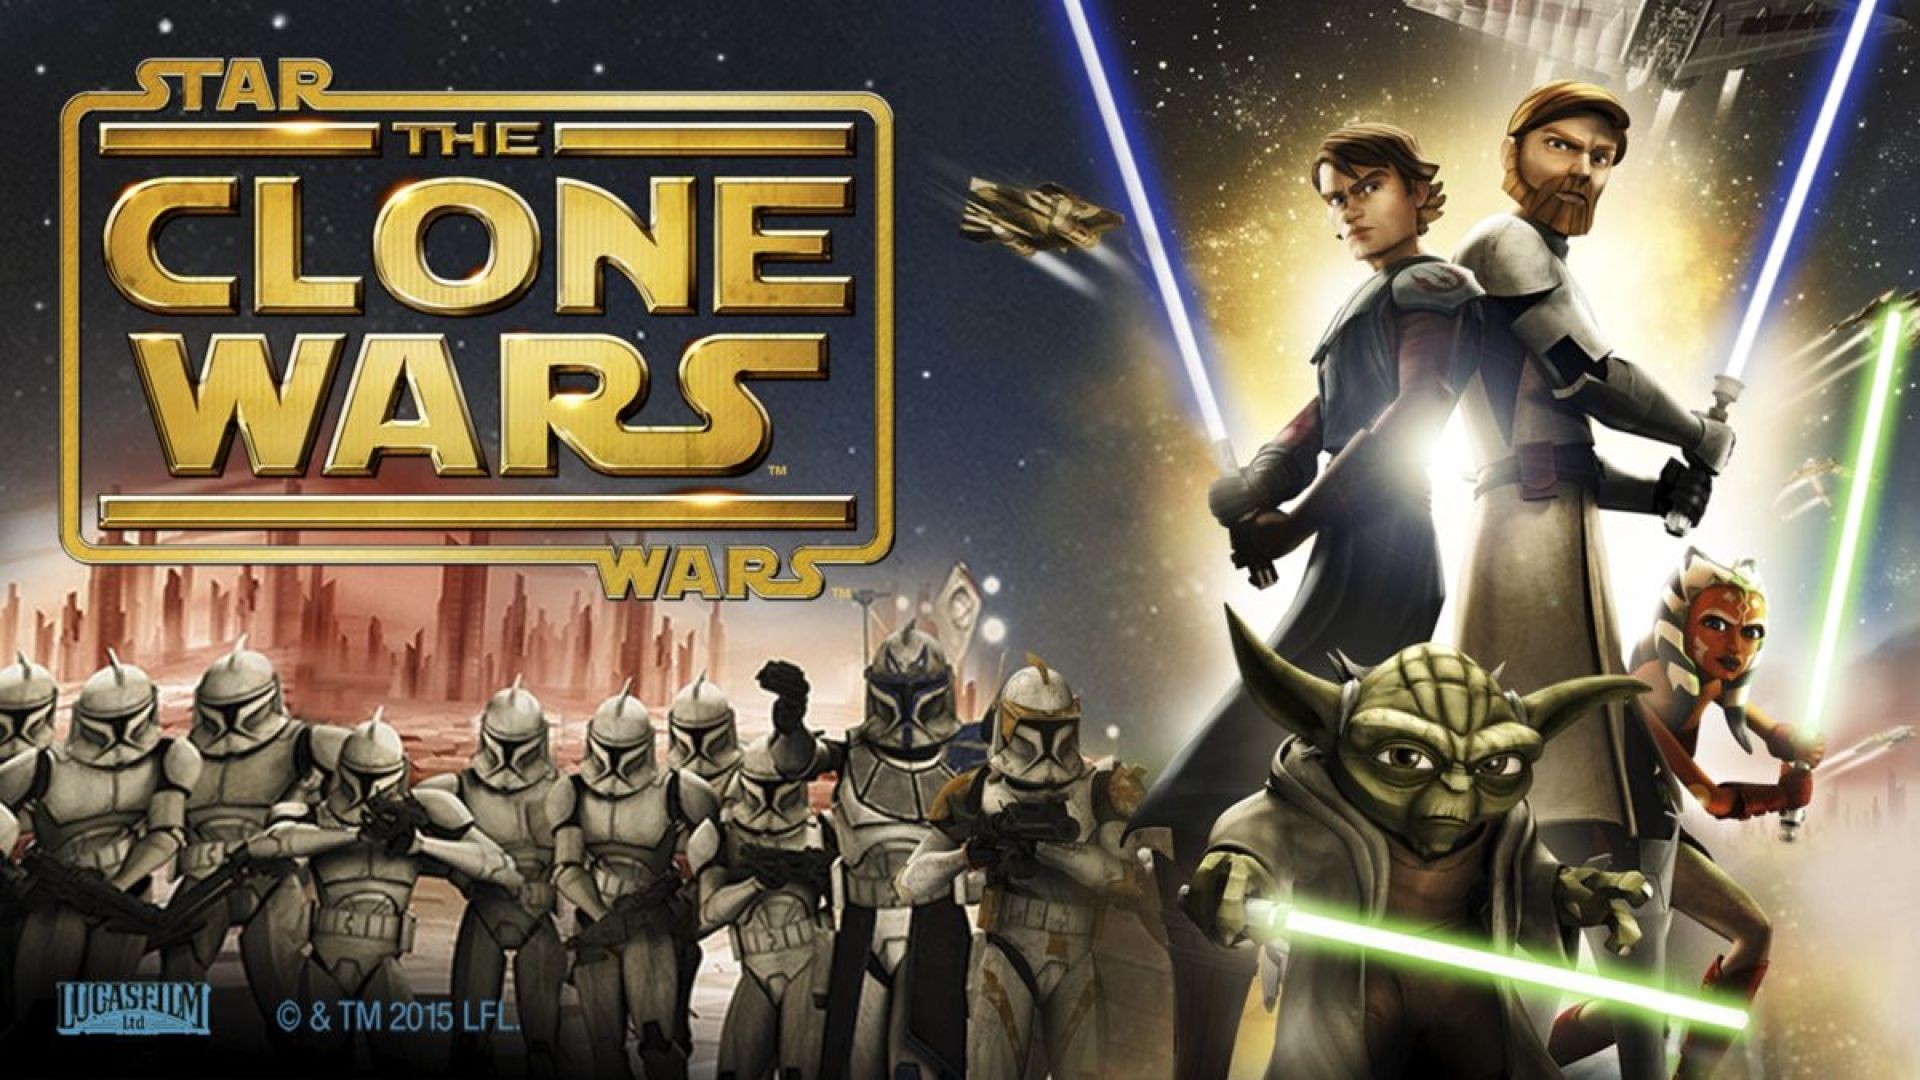 ვარსკვლავური ომები: კლონების ომი / Star Wars: The Clone Wars (ქართულად) (2008)